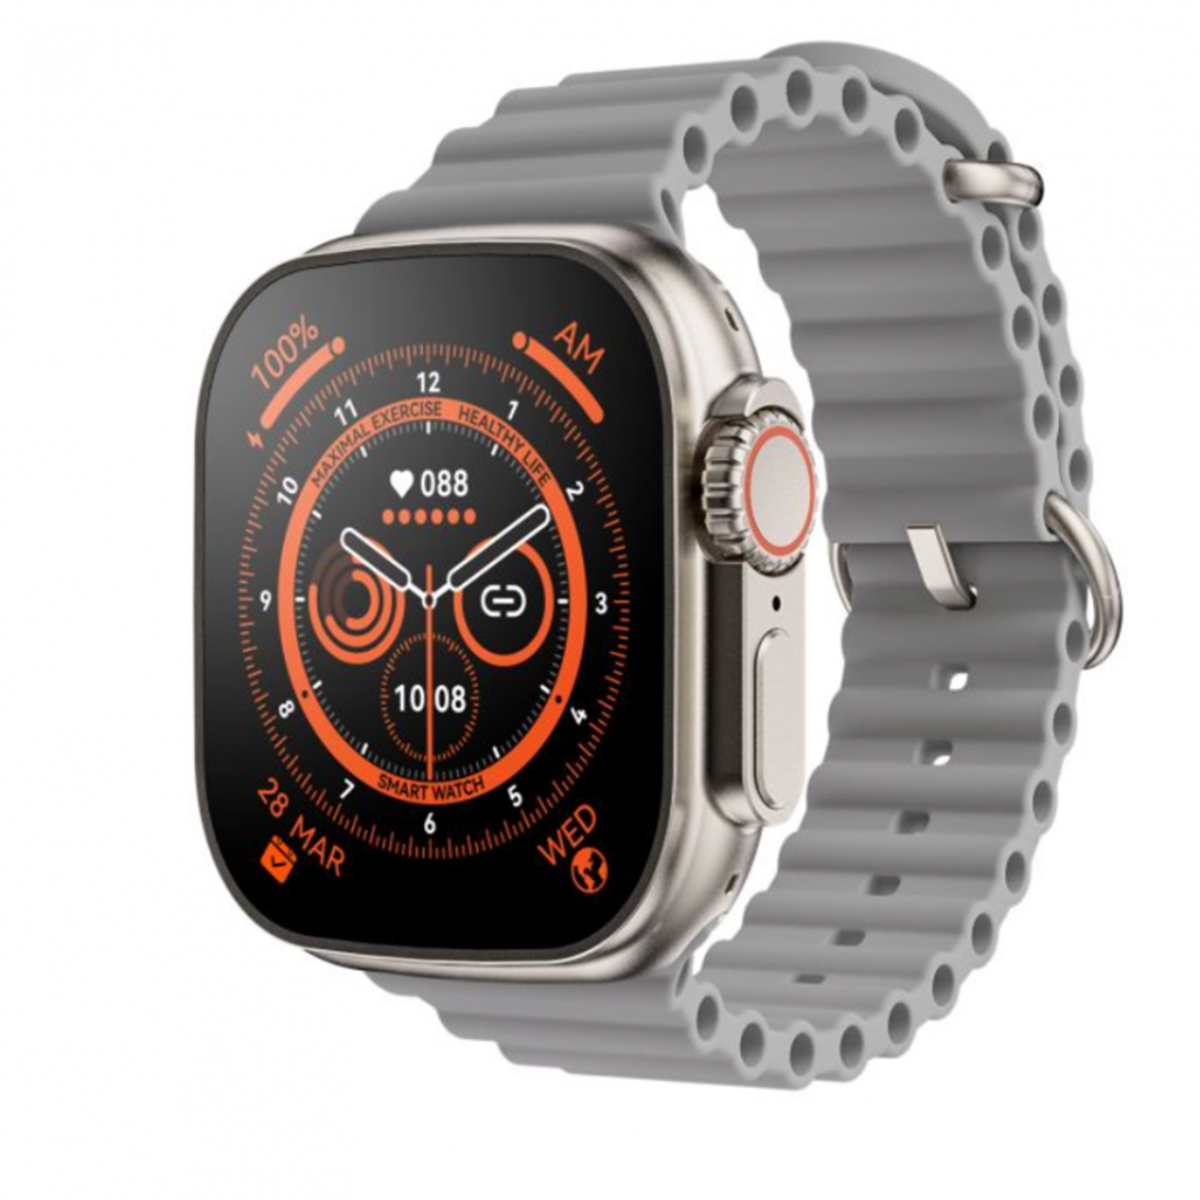 Reloj Inteligente Smartwatch Smartek Sw-ult8 Unisex, Bluetooth, Llamadas, Carga Inalámbrica - gris - 